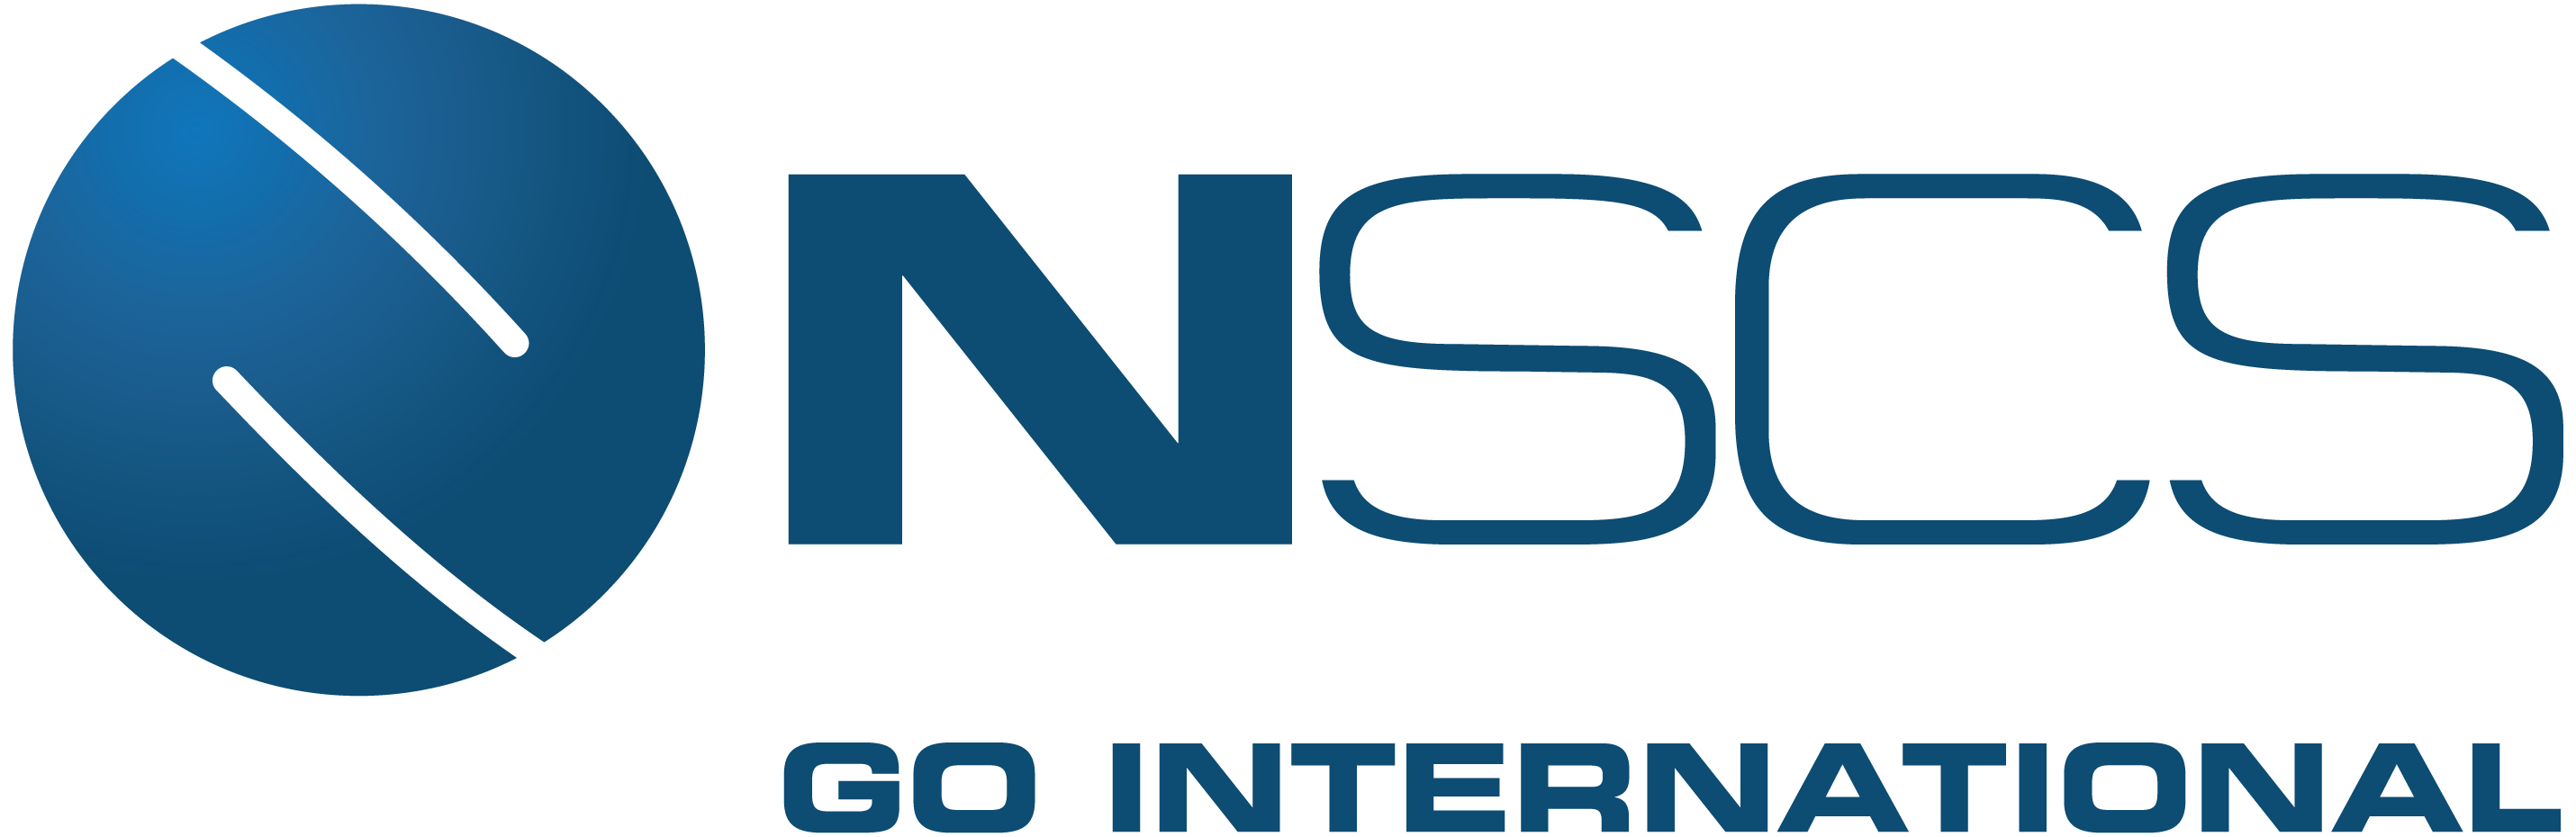 NSCS Logotyp